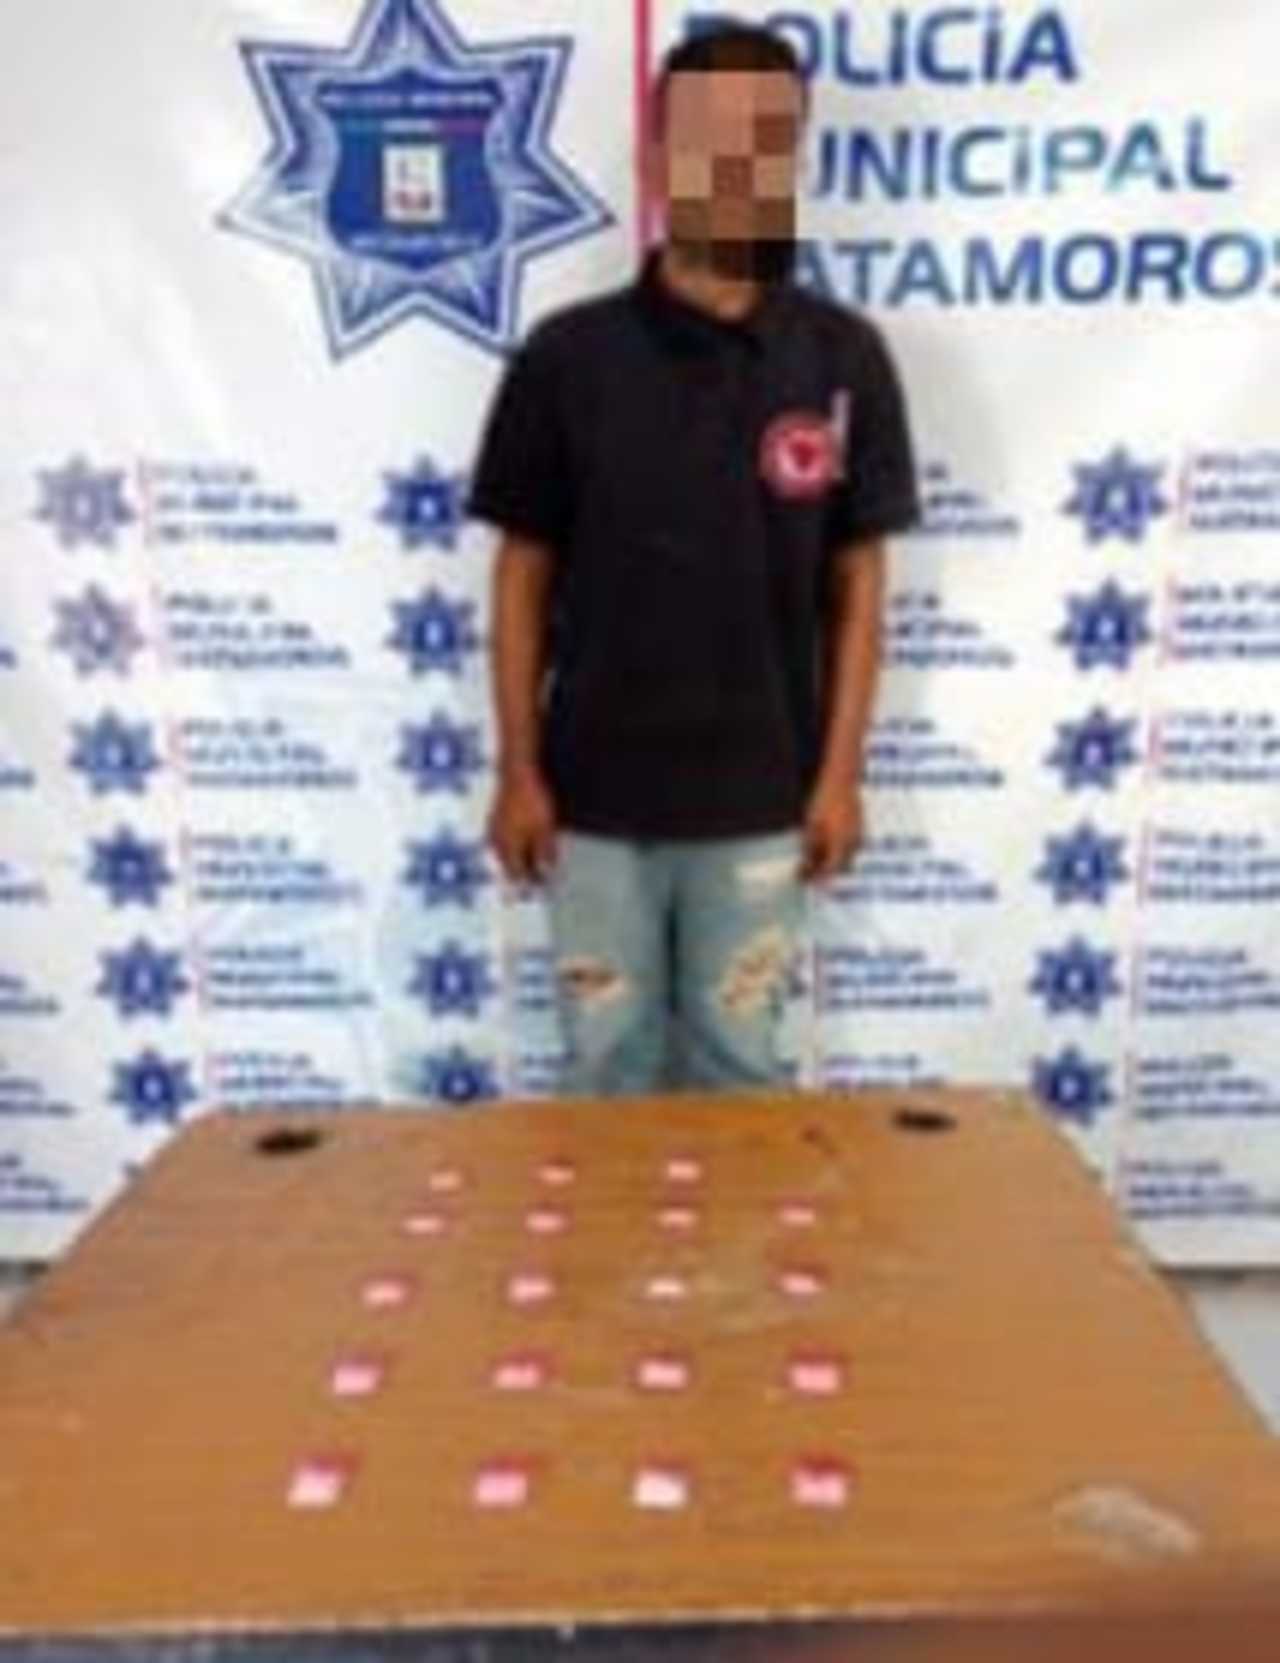 Le encontraron 19 bolsas de color rojo con la droga denominada como 'cristal' dentro de las mismas.